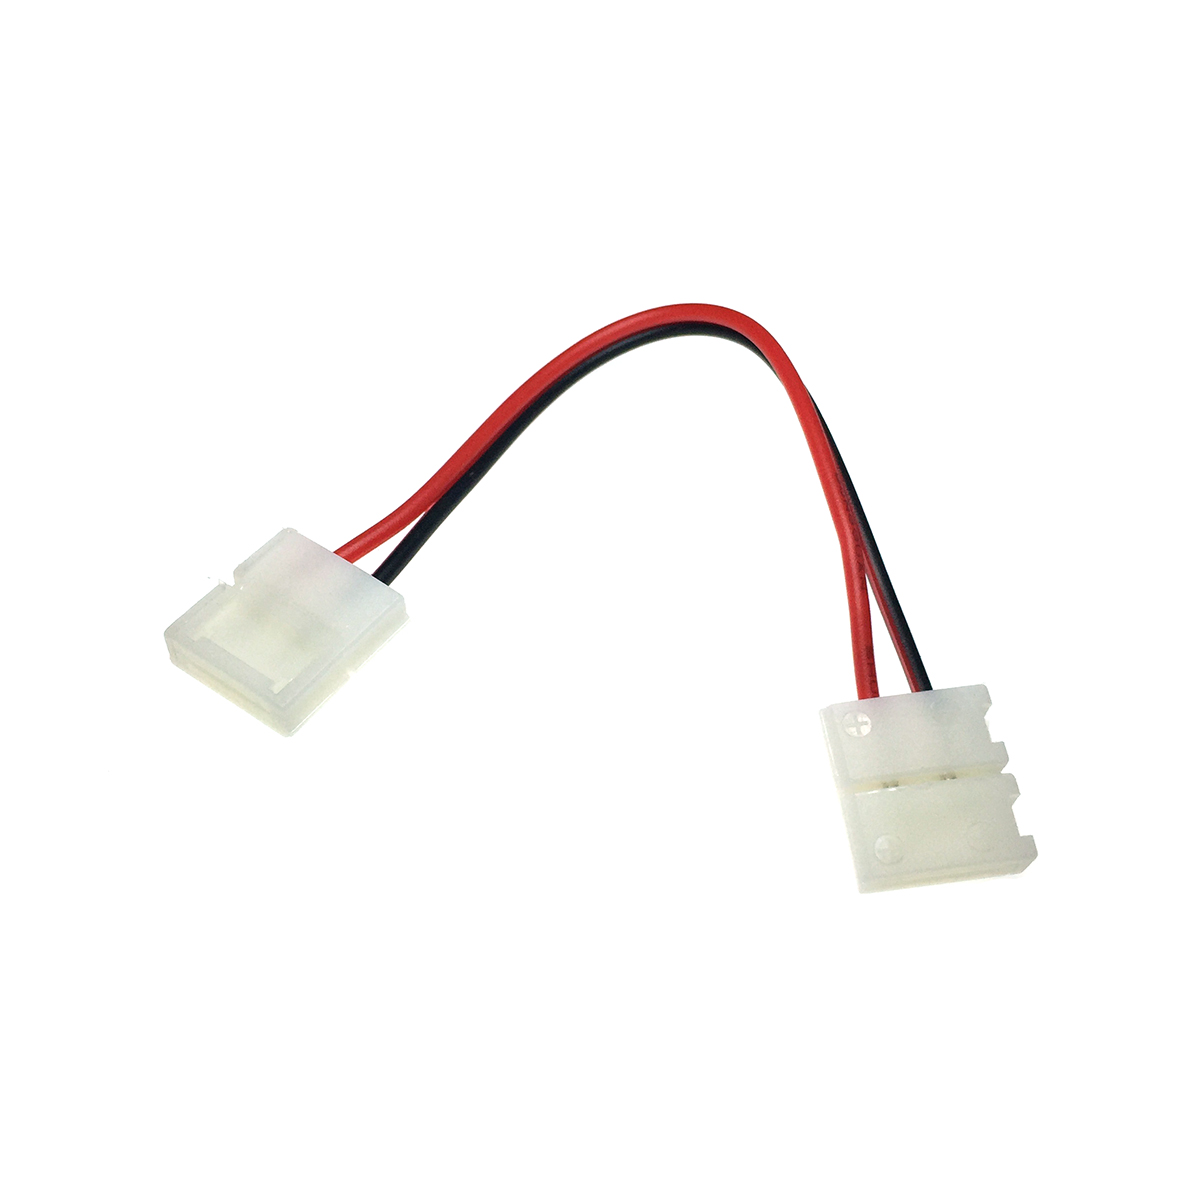 Коннектор /провод/ для соединения светодиодных лент 5050 между собой .